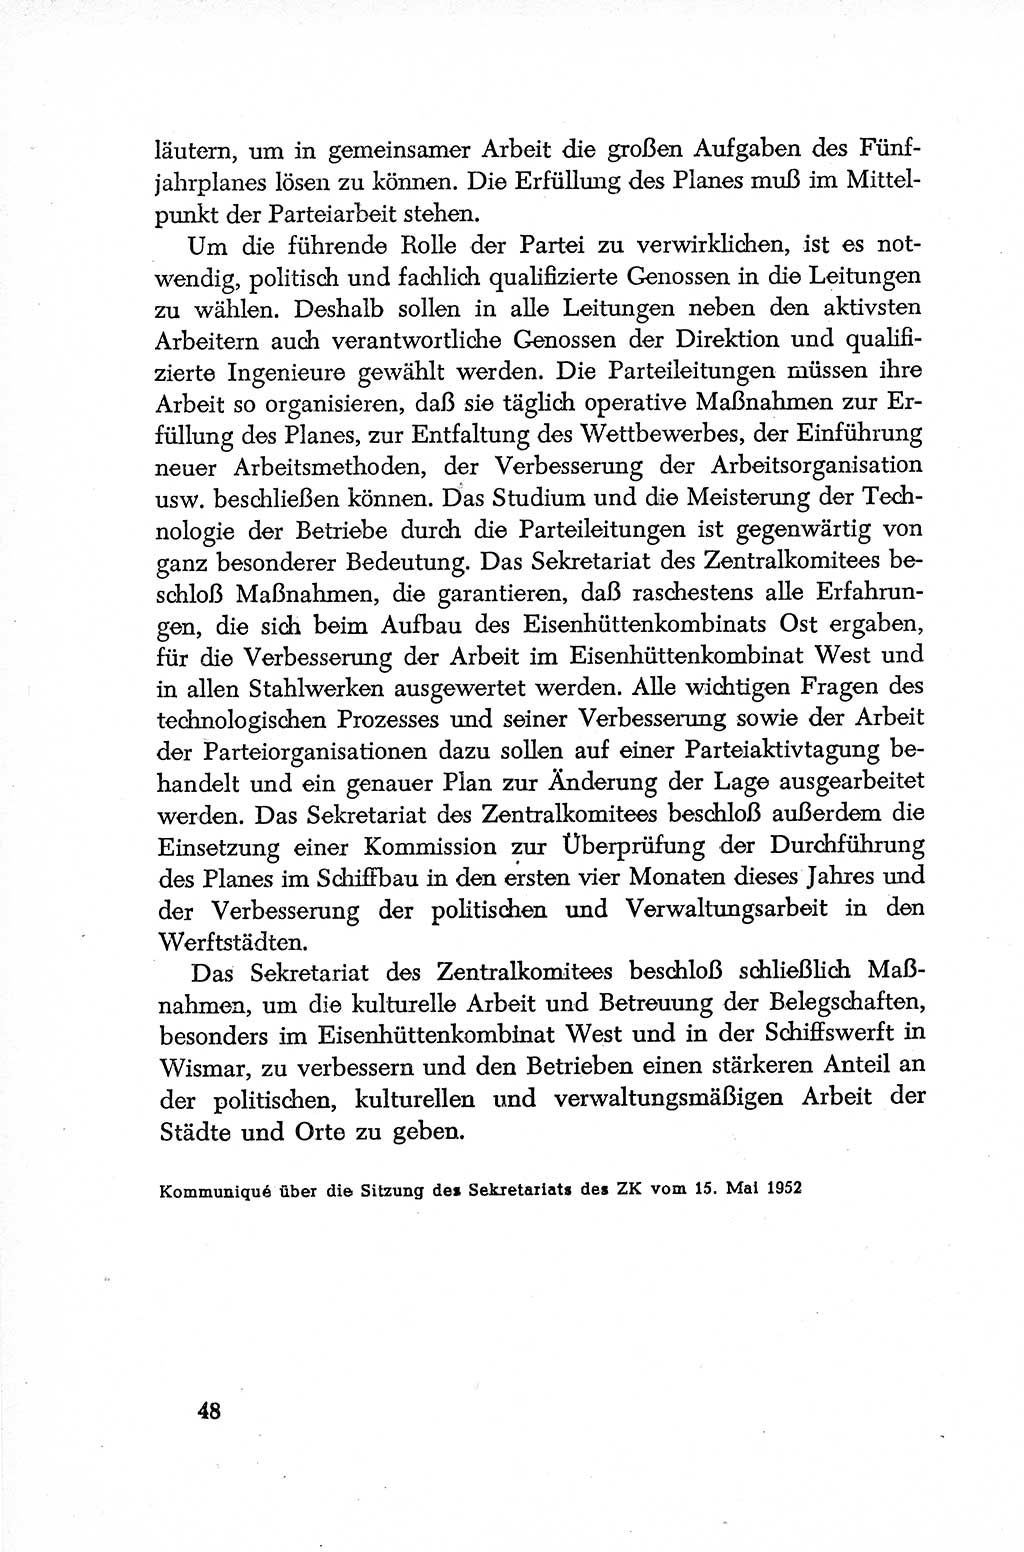 Dokumente der Sozialistischen Einheitspartei Deutschlands (SED) [Deutsche Demokratische Republik (DDR)] 1952-1953, Seite 48 (Dok. SED DDR 1952-1953, S. 48)